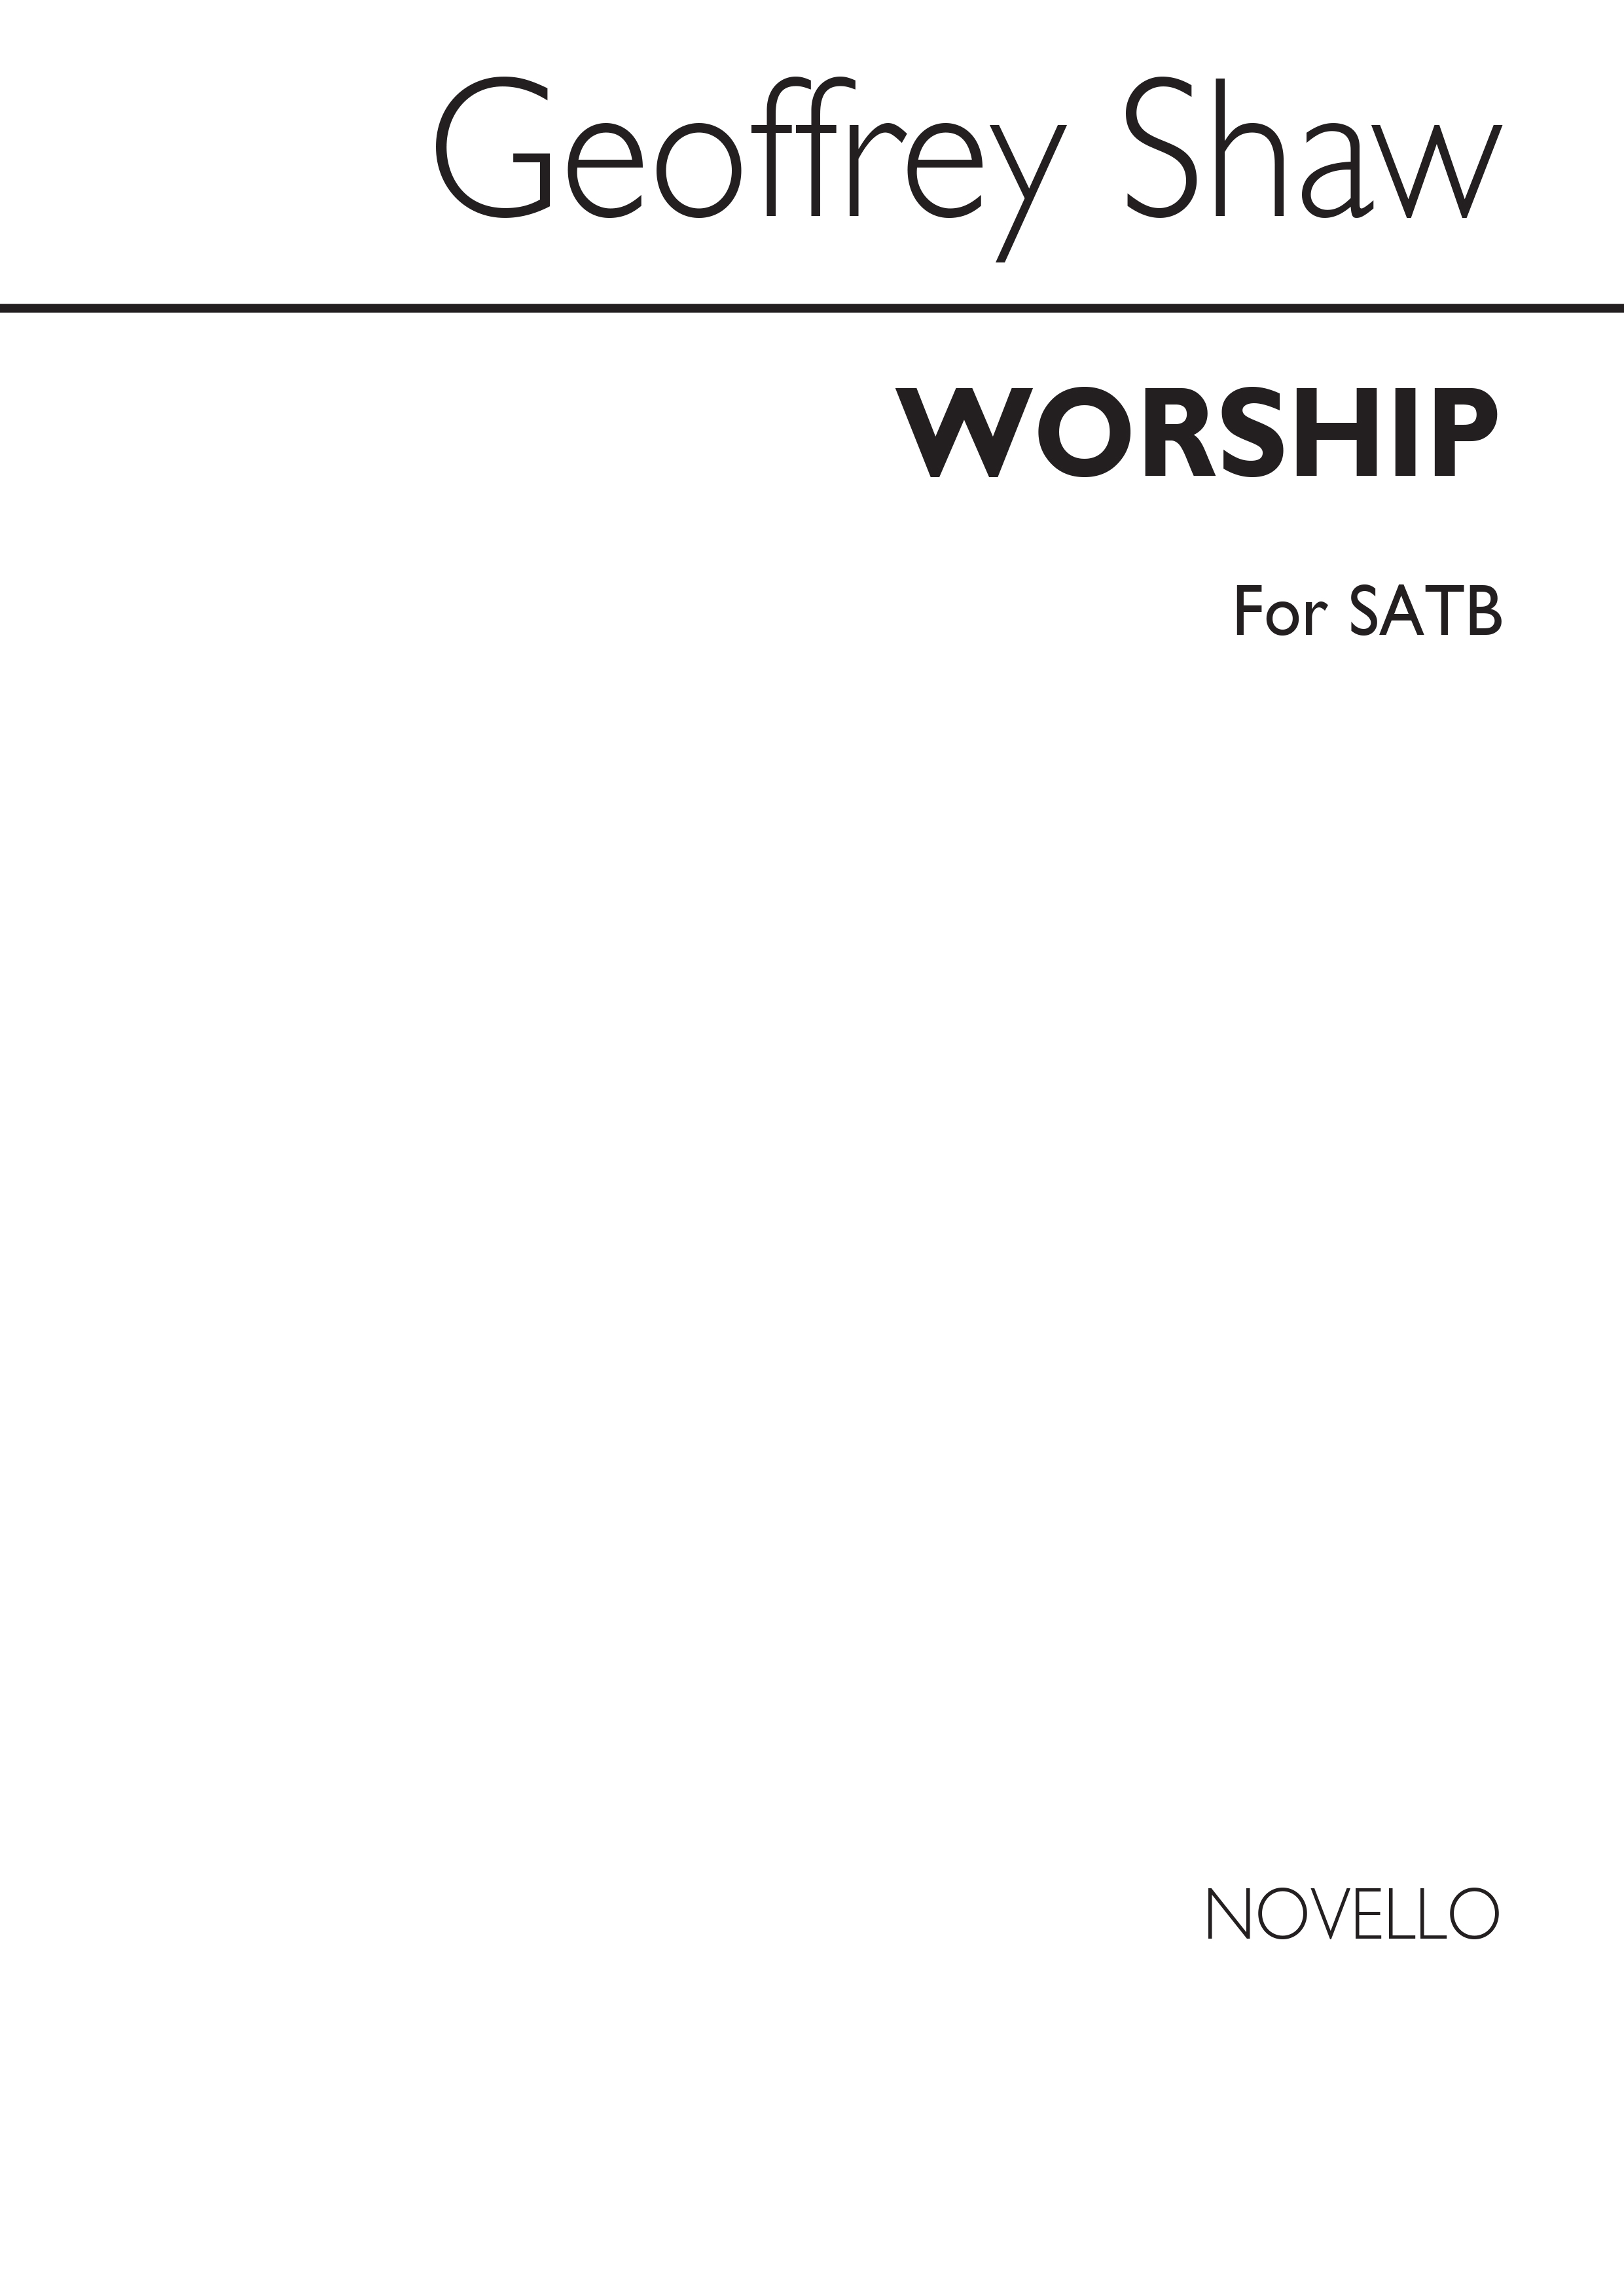 Geoffrey Shaw: Worship for SATB Chorus